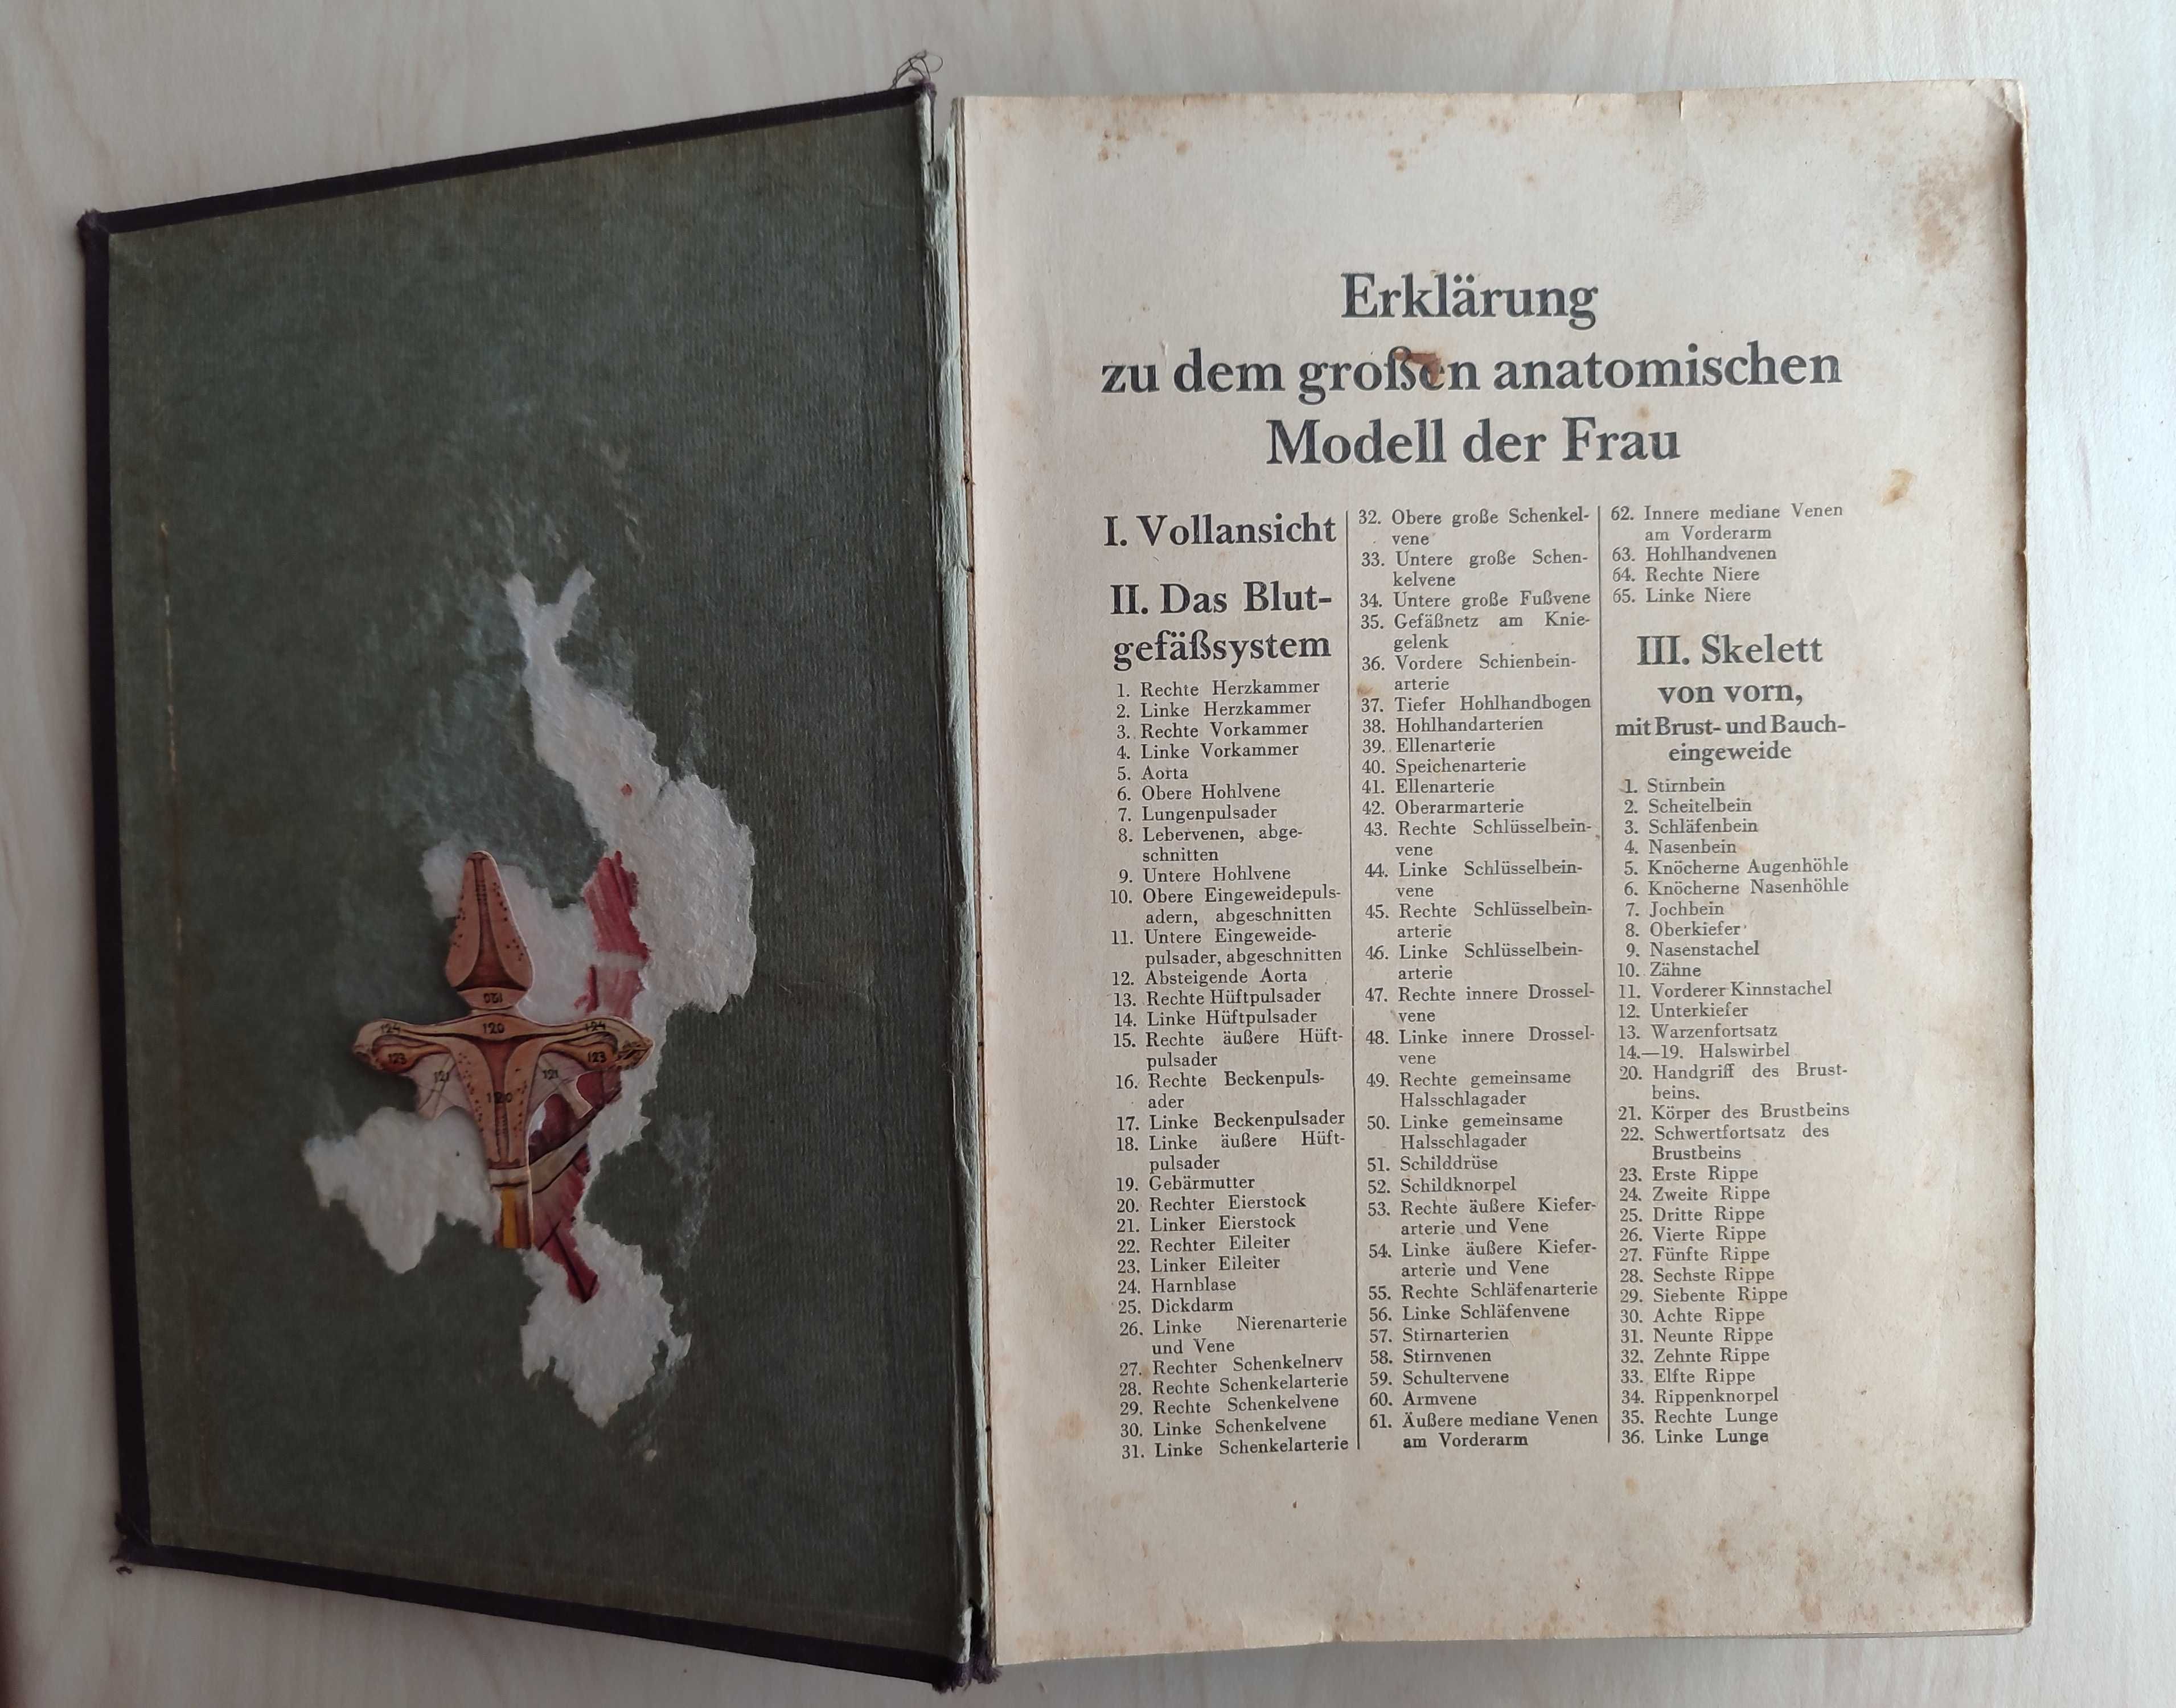 Mein Korper – M. Sendenholm, książka unikat z 1930 r.